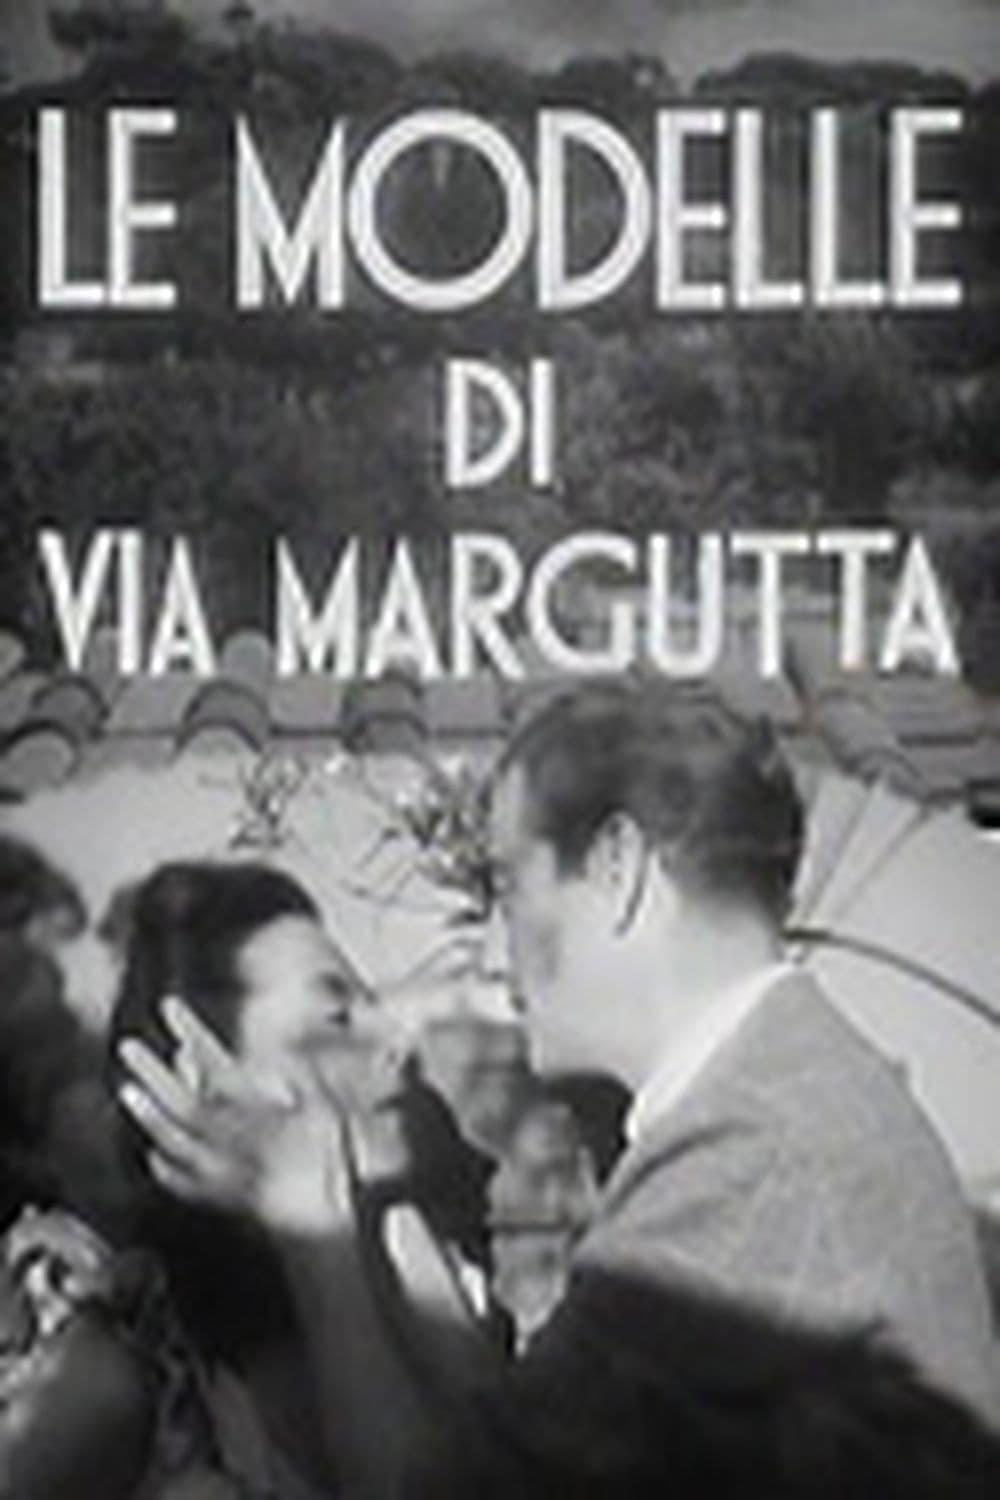 Le modelle di via Margutta Poster